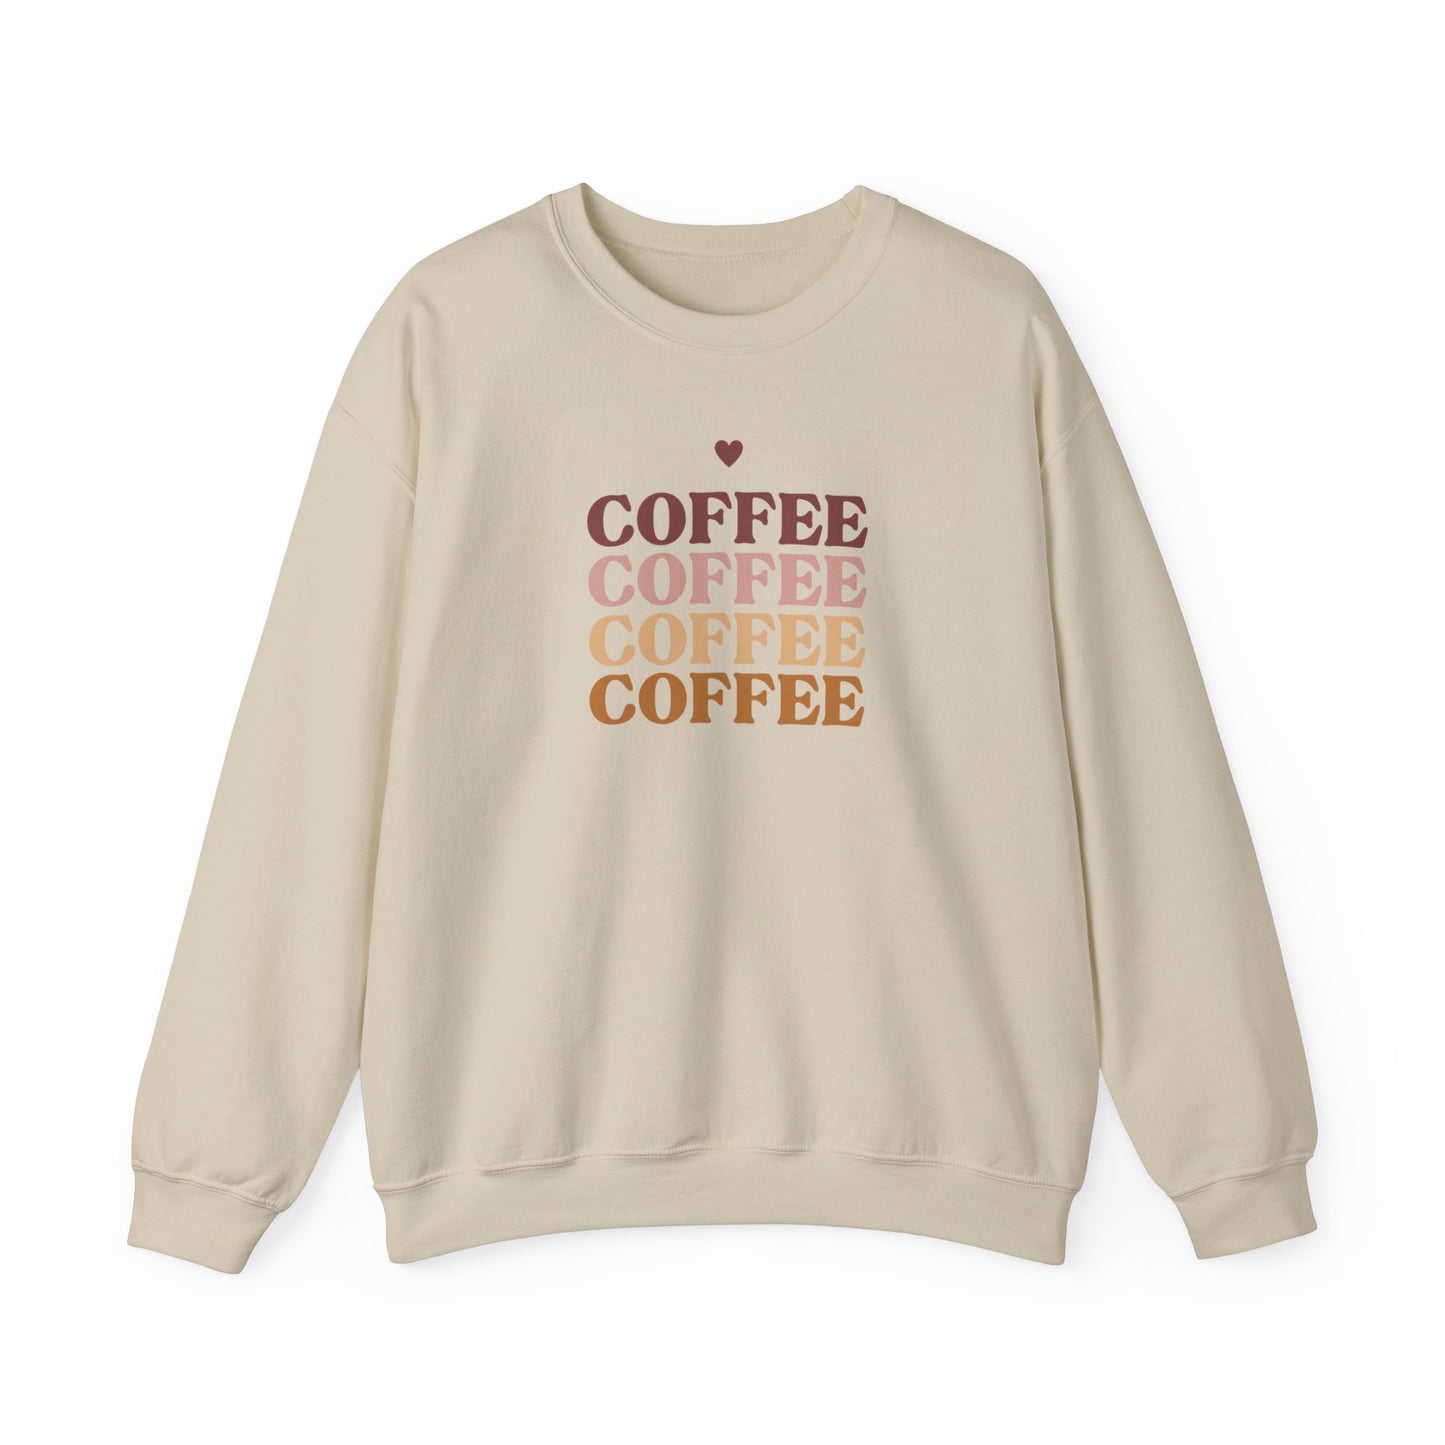 Coffee Coffee Coffee Coffee  Sweatshirt, Gift For her Gift for Coffee Lovers, Gift for Mom, Gift For Aunt